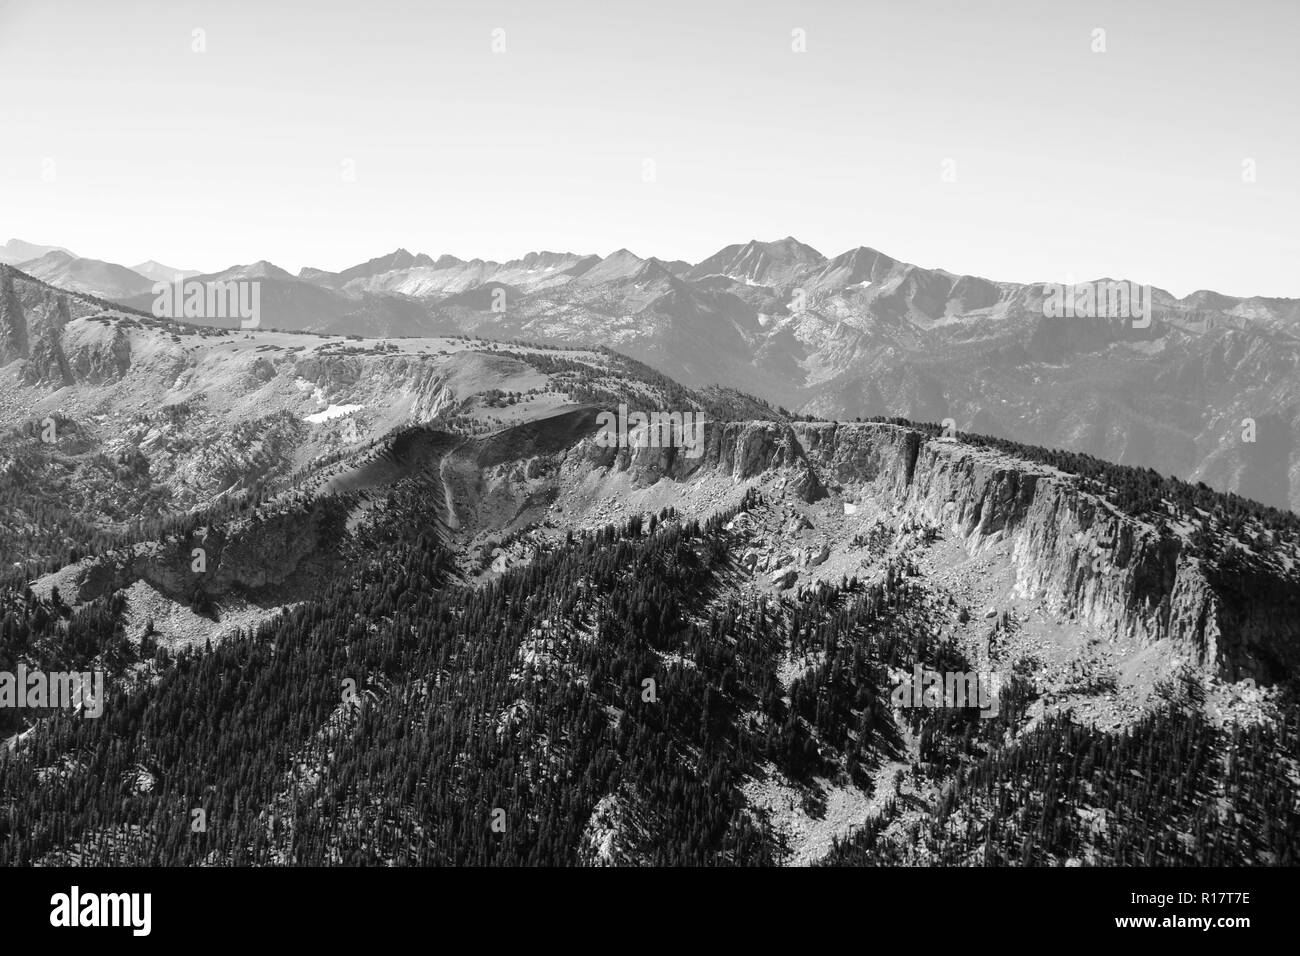 Blick von der Spitze des Berges oder Olympus zu den Gipfeln vor dem Hintergrund der Wolken und Himmel, Schwarz und Weiss Stockfoto